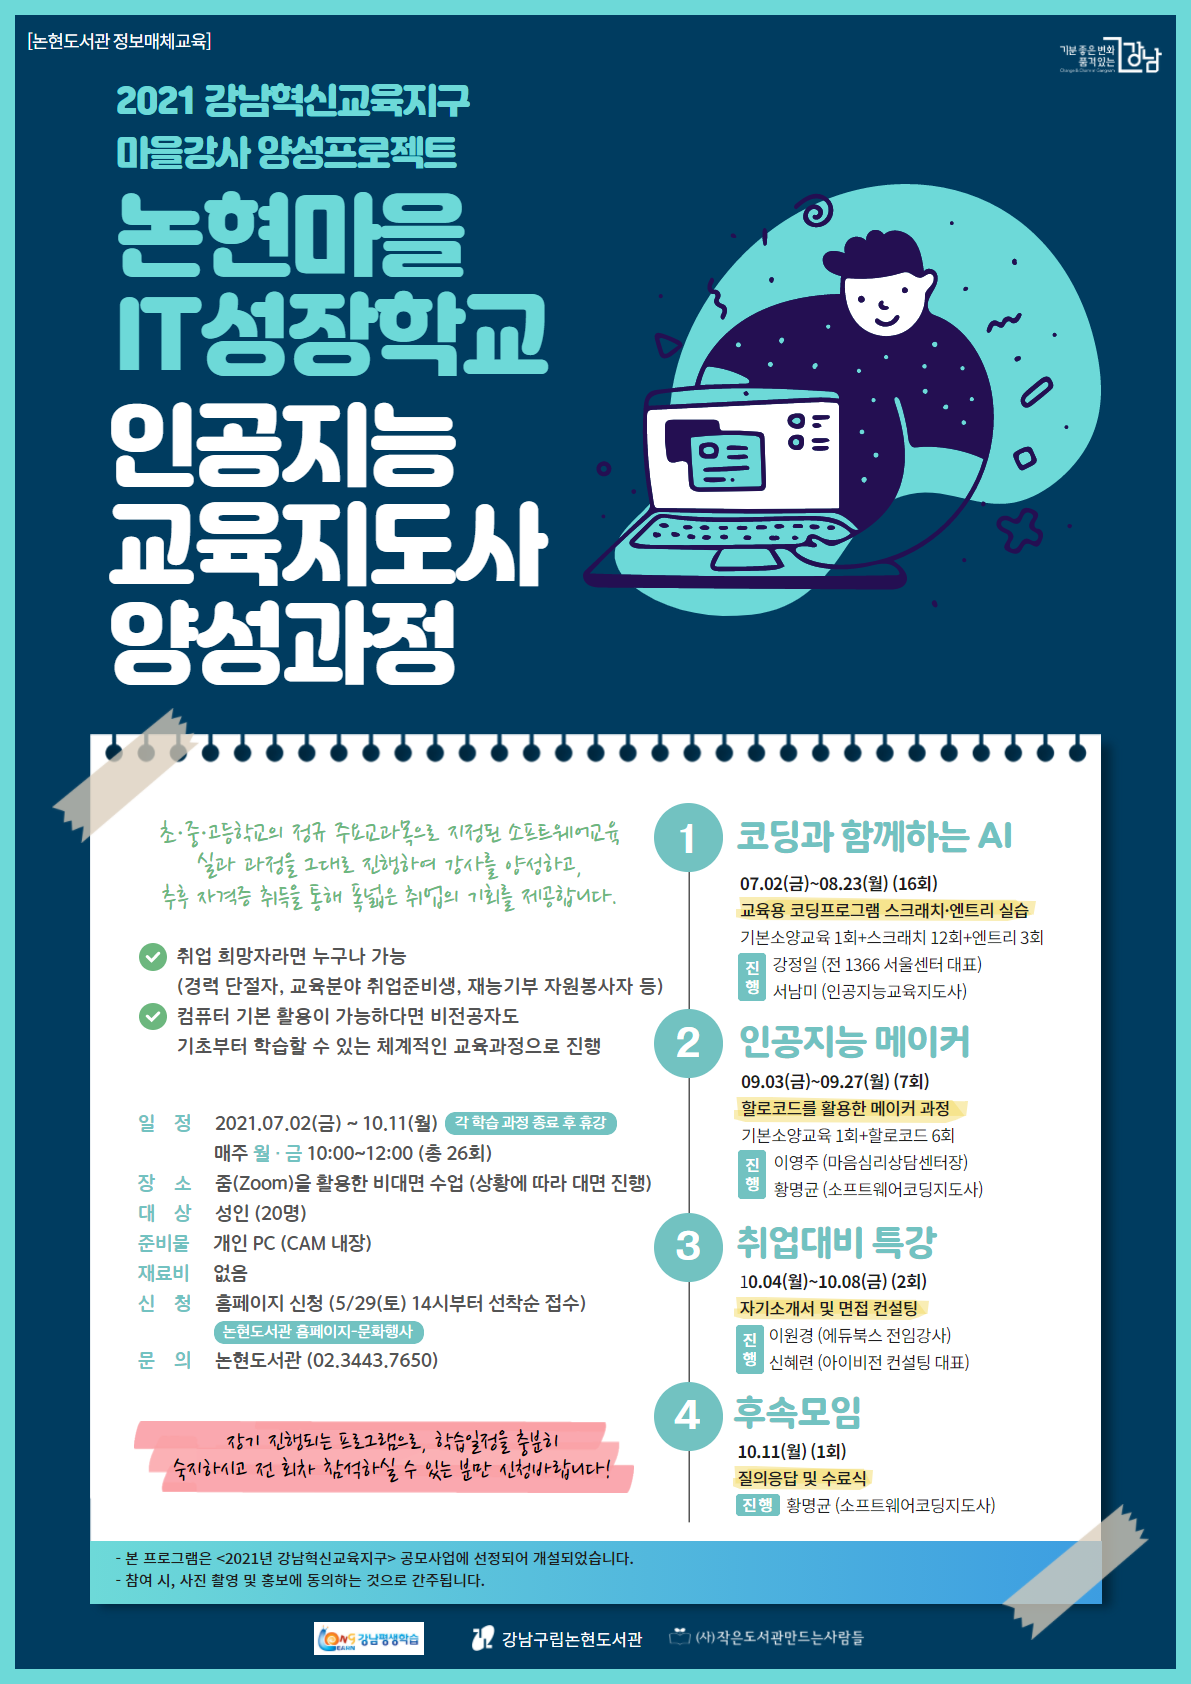 강남구립논현도서관, '논현 마을 IT 성장학교' 포스터